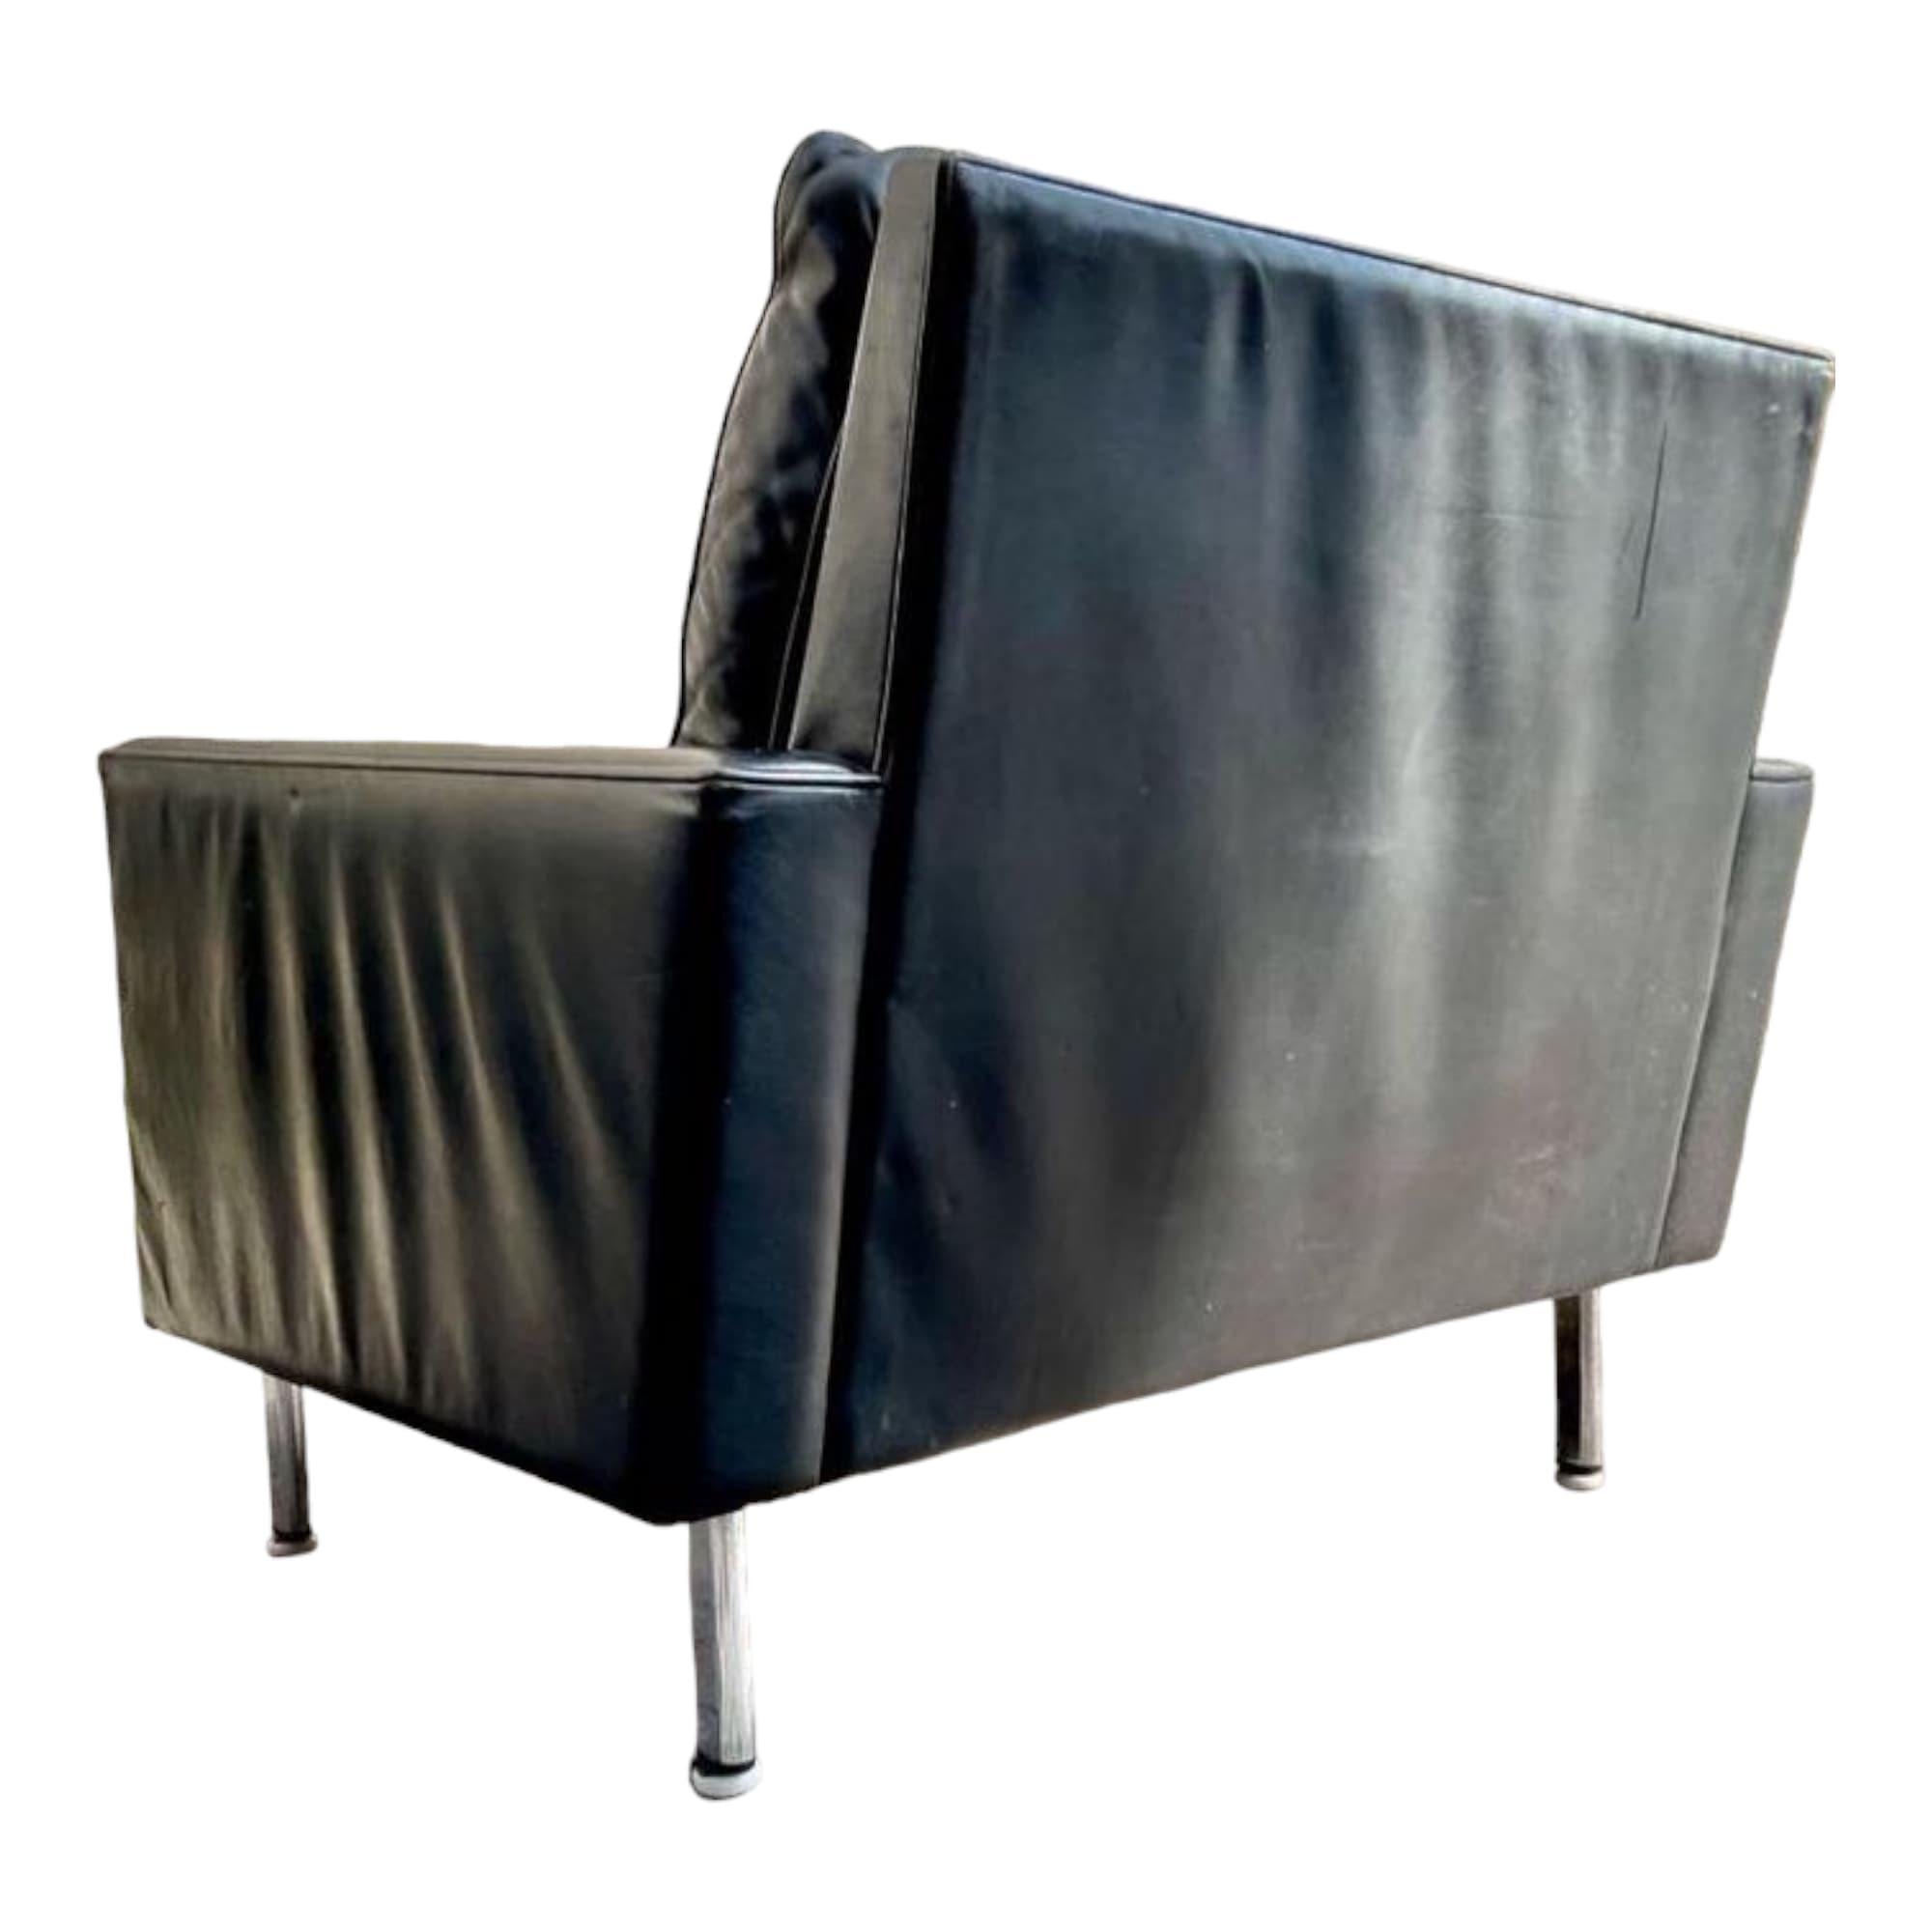 Una bella coppia di poltrone di George Nelson, modello Loose Cushion, per Herman Miller. Questi splendidi pezzi d'antiquariato risalenti al 1970 offrono un design senza tempo e un comfort eccezionale. Con un'altezza della seduta di 41 cm, queste